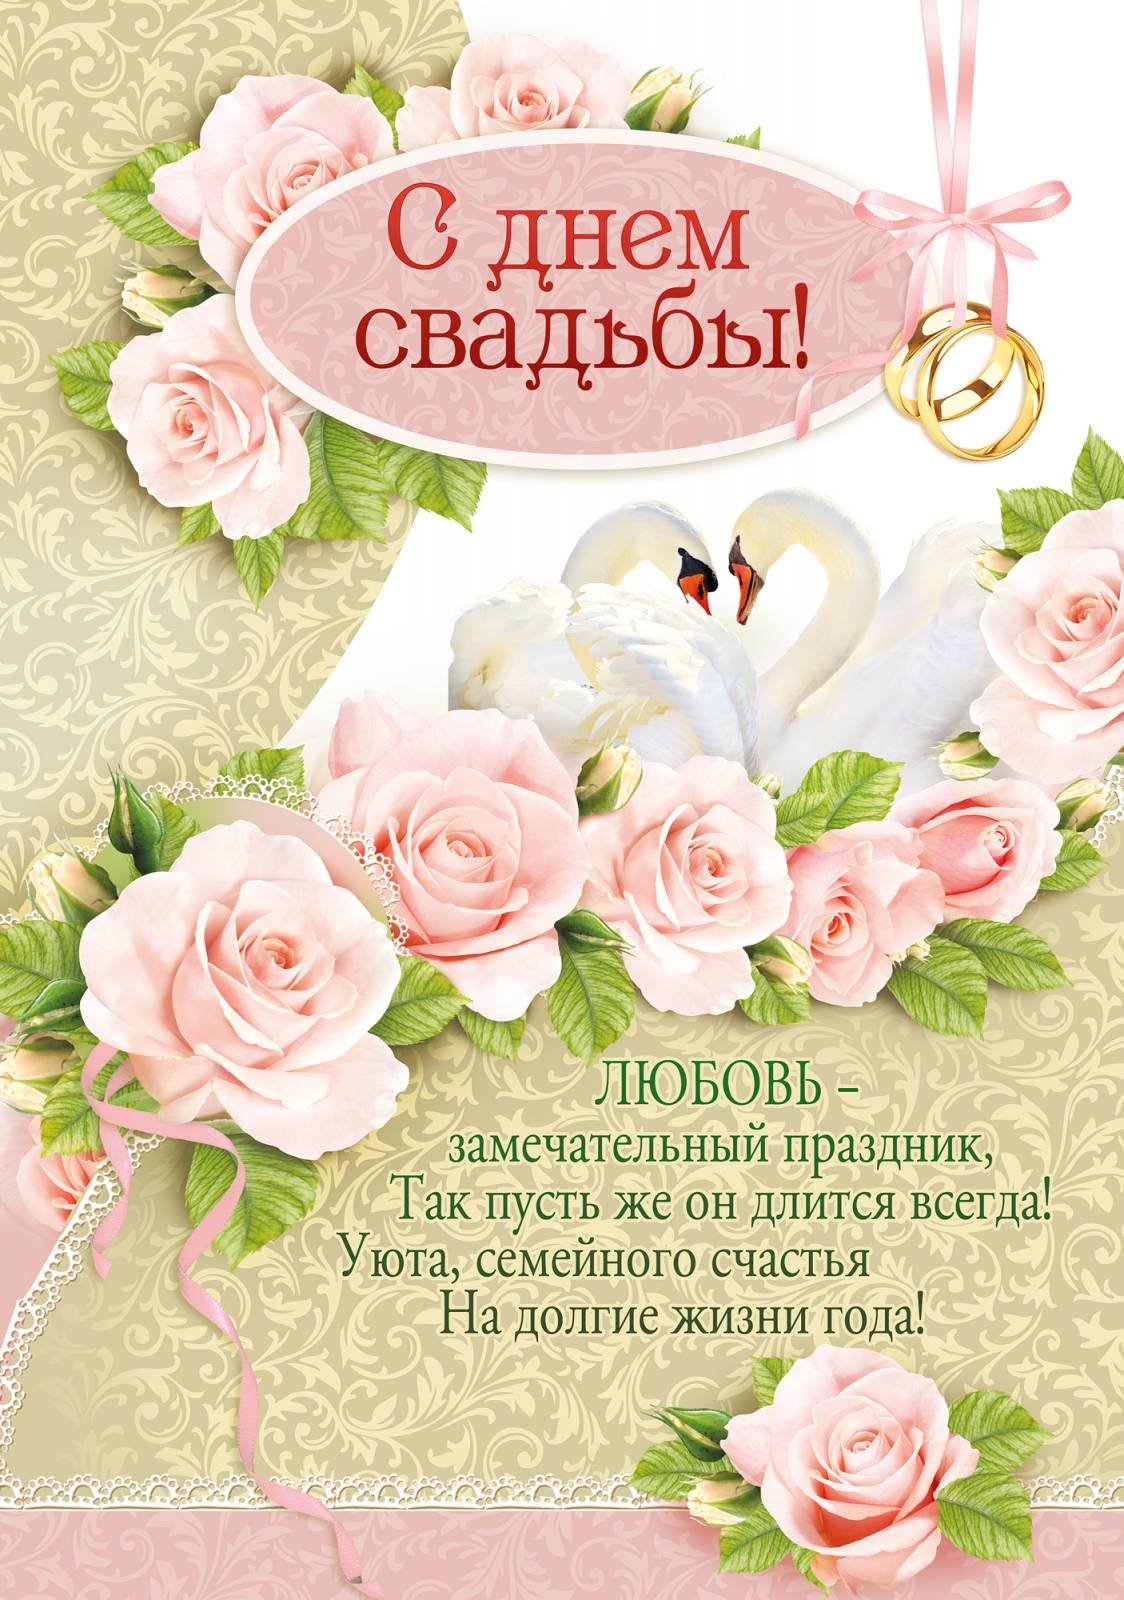 Поздравить с днем свадьбы открытка